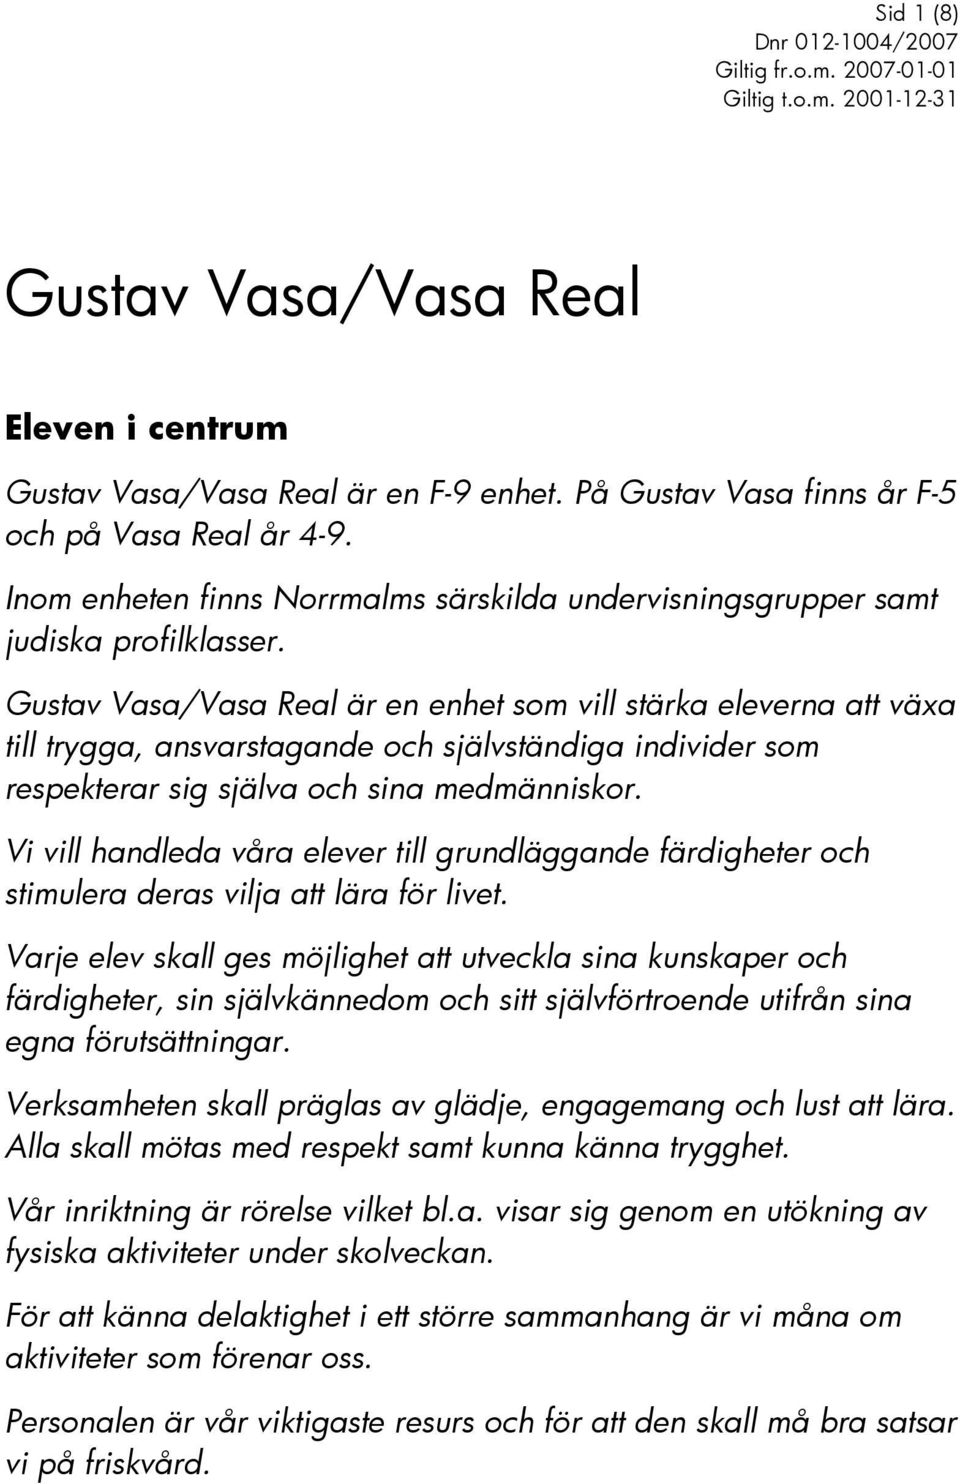 Gustav Vasa/Vasa Real är en enhet som vill stärka eleverna att växa till trygga, ansvarstagande och självständiga individer som respekterar sig själva och sina medmänniskor.